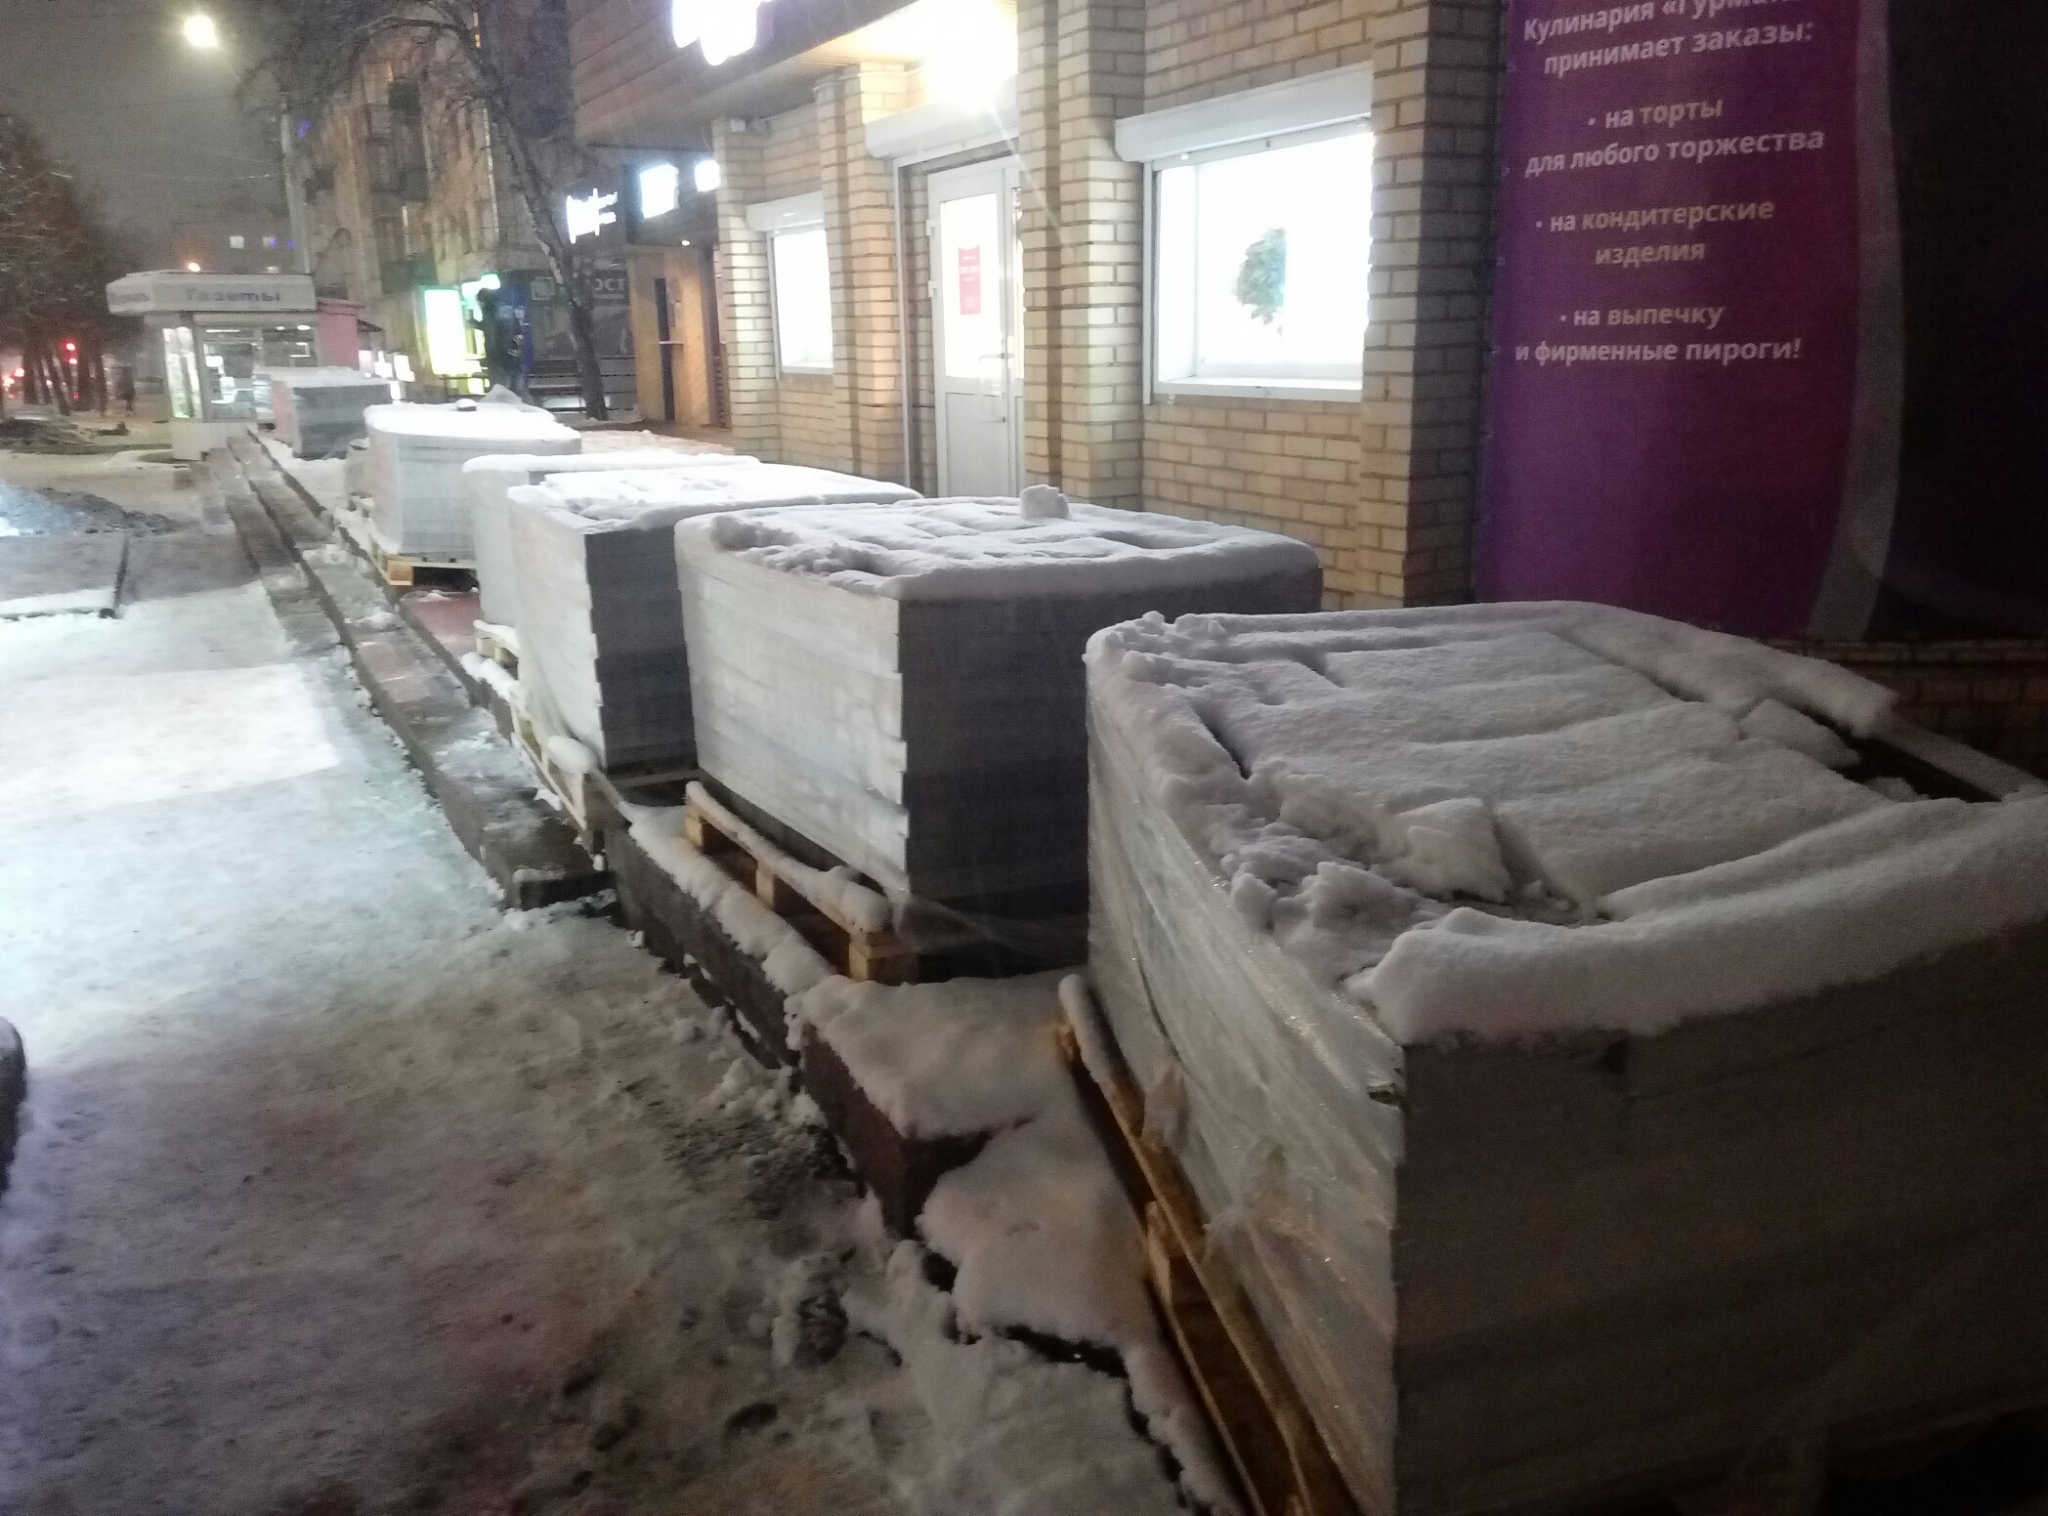 Своевременно: в Кирове планируют укладывать брусчатку на остановке в снег